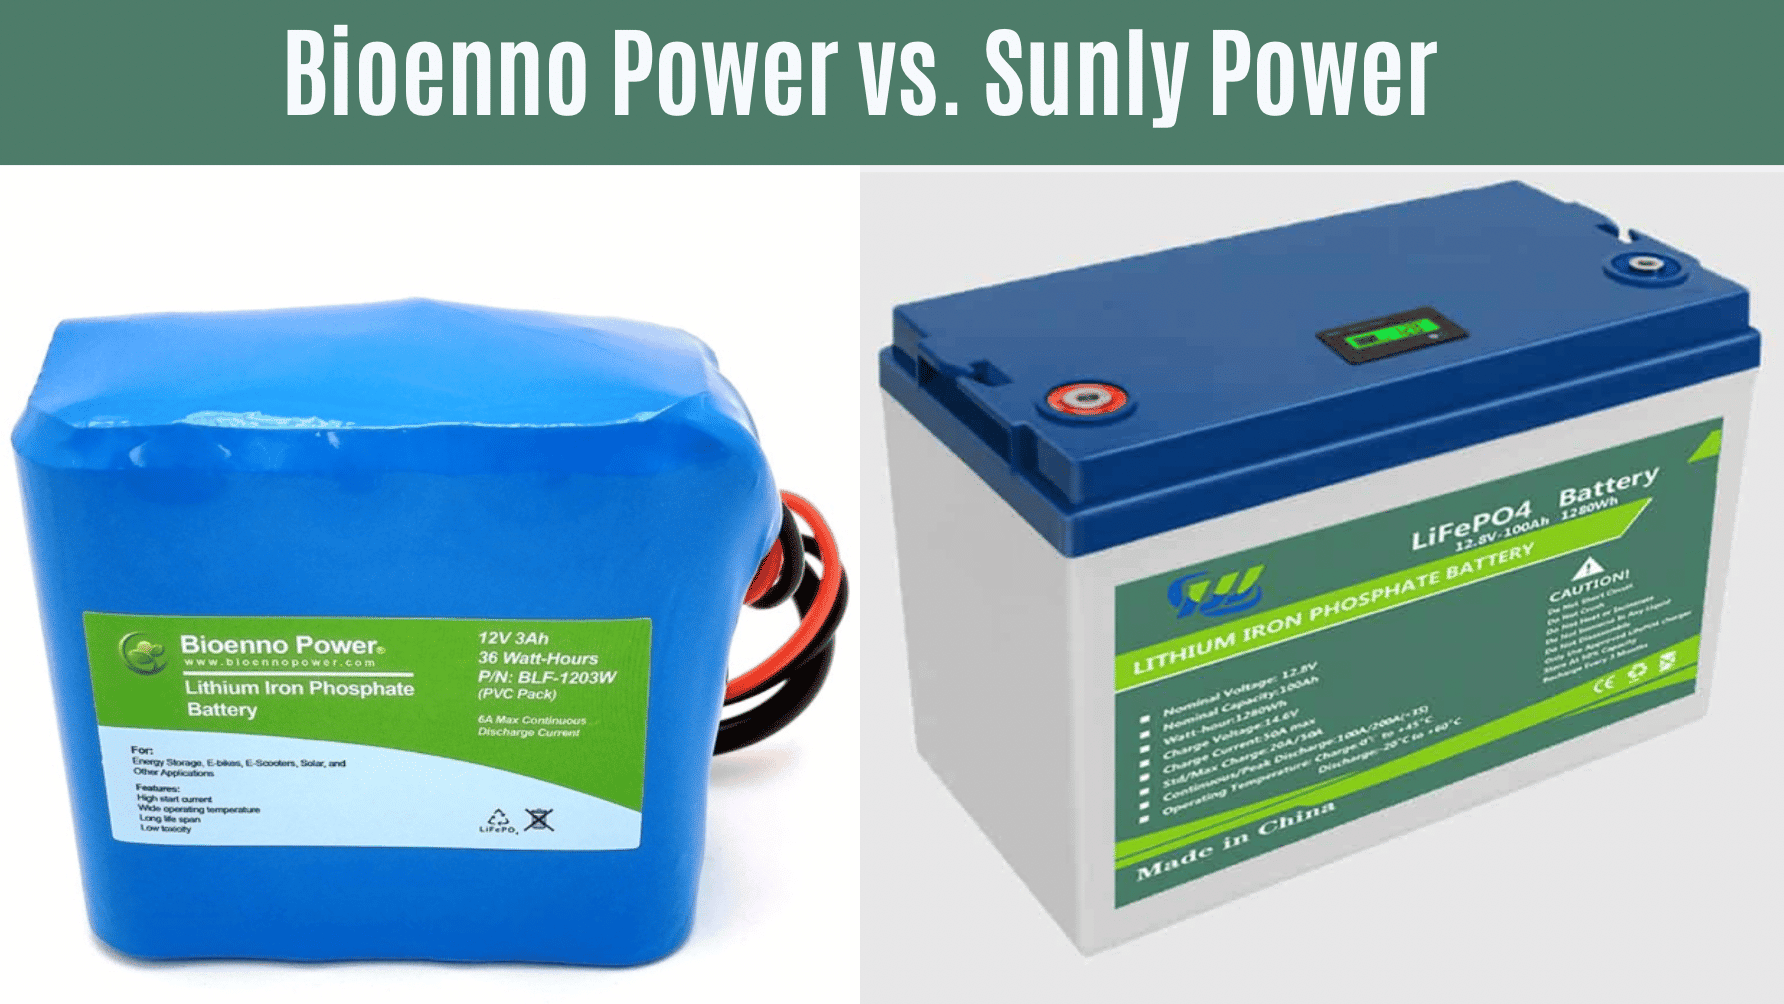 Bioenno Power vs. Sunly Power